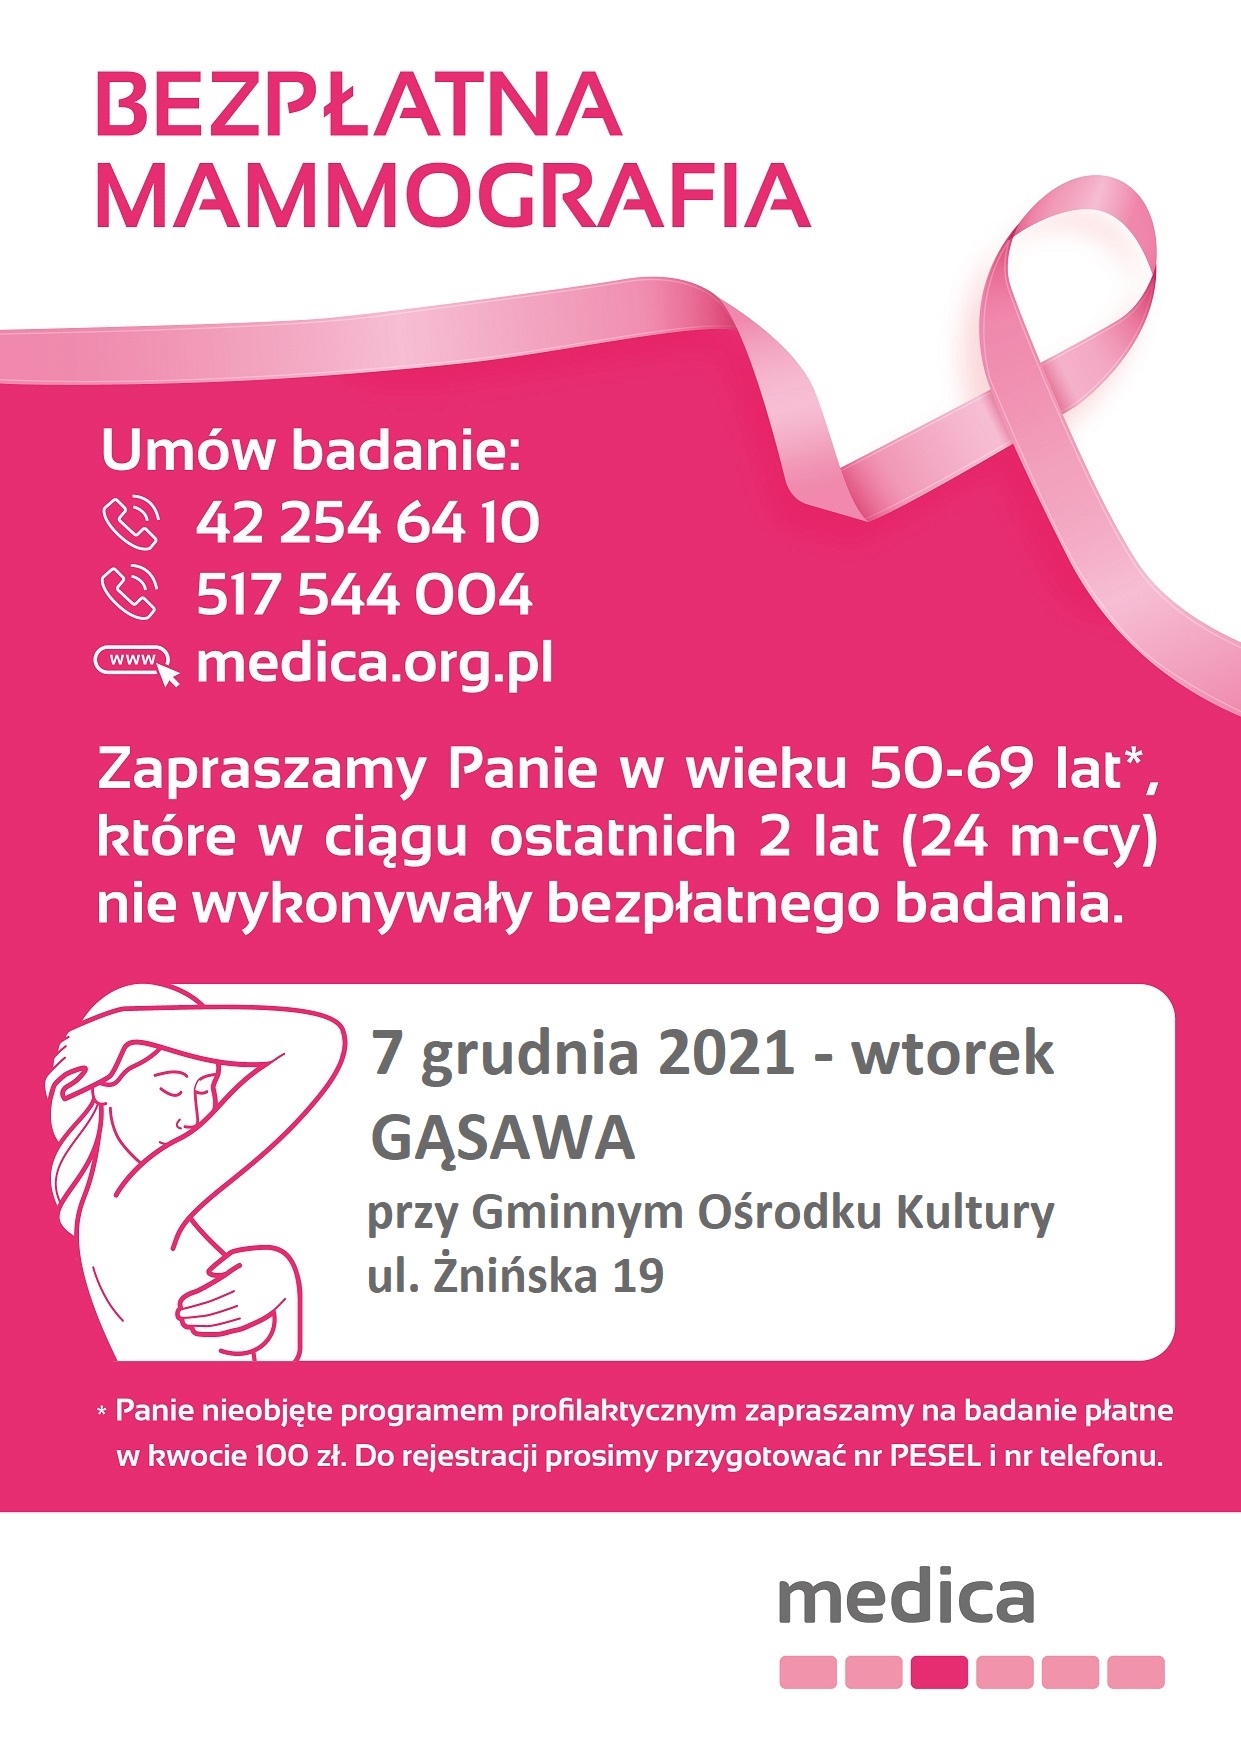 Zapraszamy na bezpłatną mammografię - wtorek 7 grudnia 2021 roku - Gąsawa ul. Żnińska 19